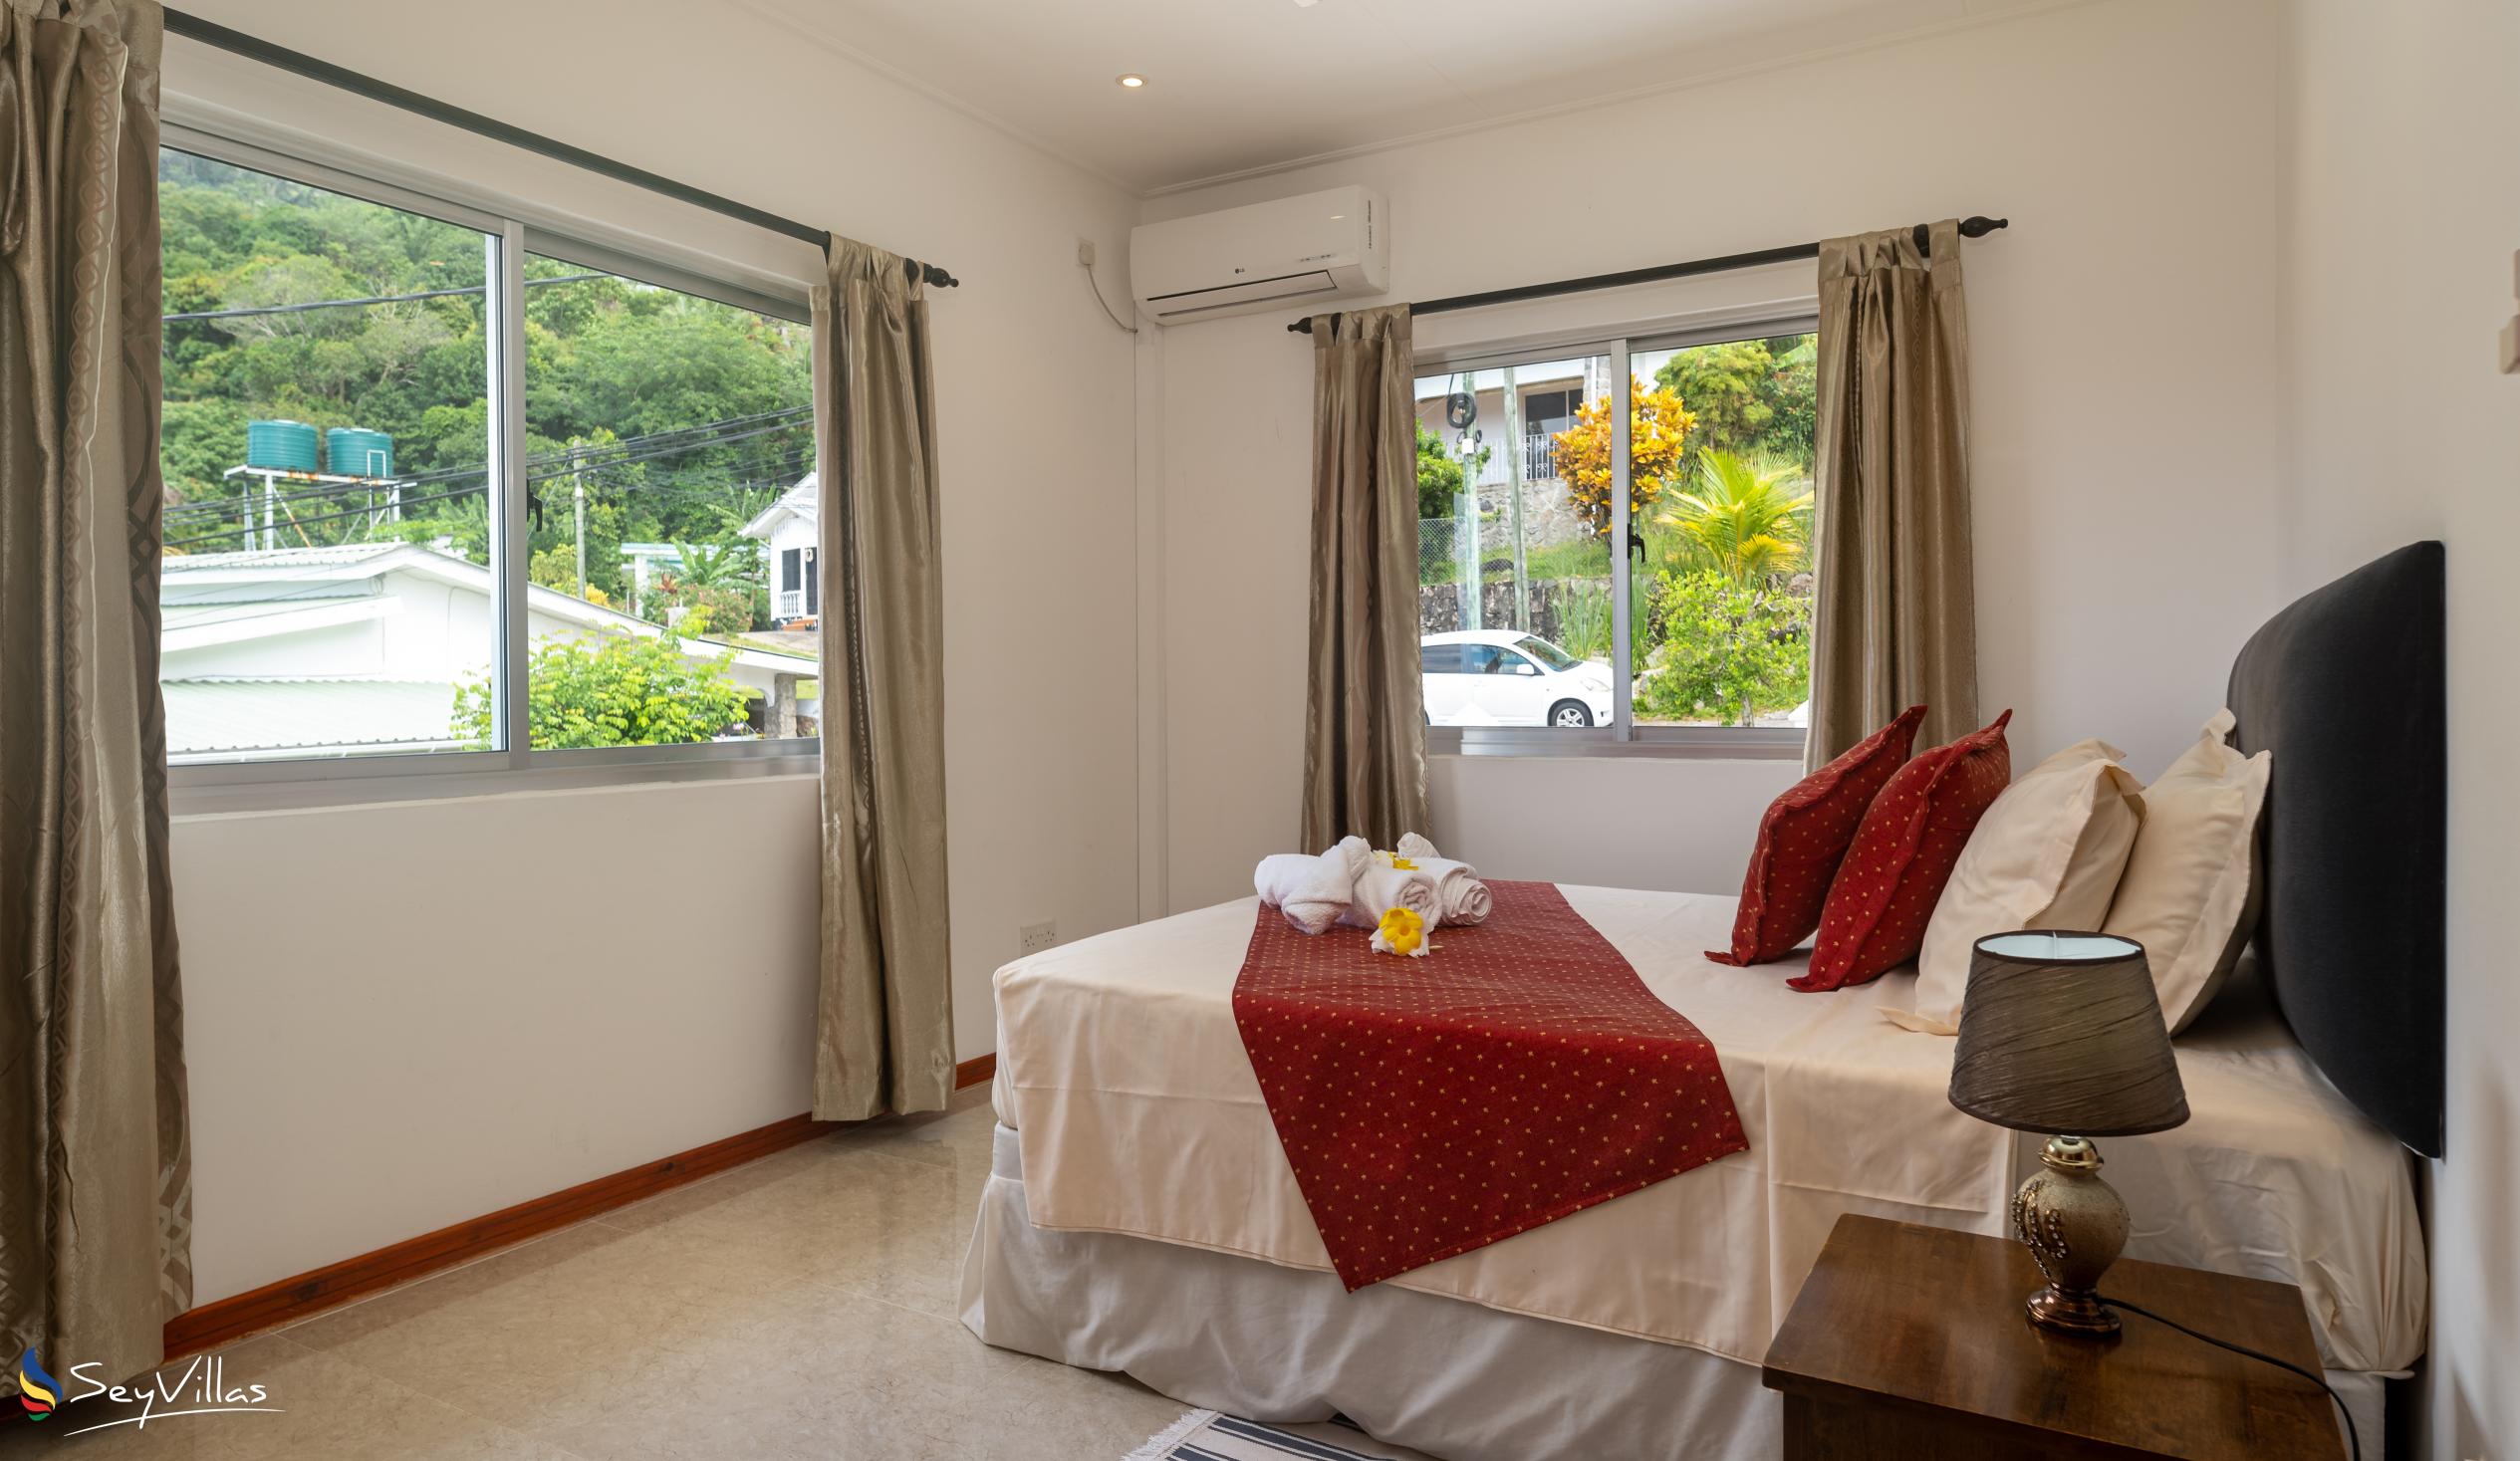 Foto 47: Jbilla Self Catering - Appartamento con 2 camere - Mahé (Seychelles)